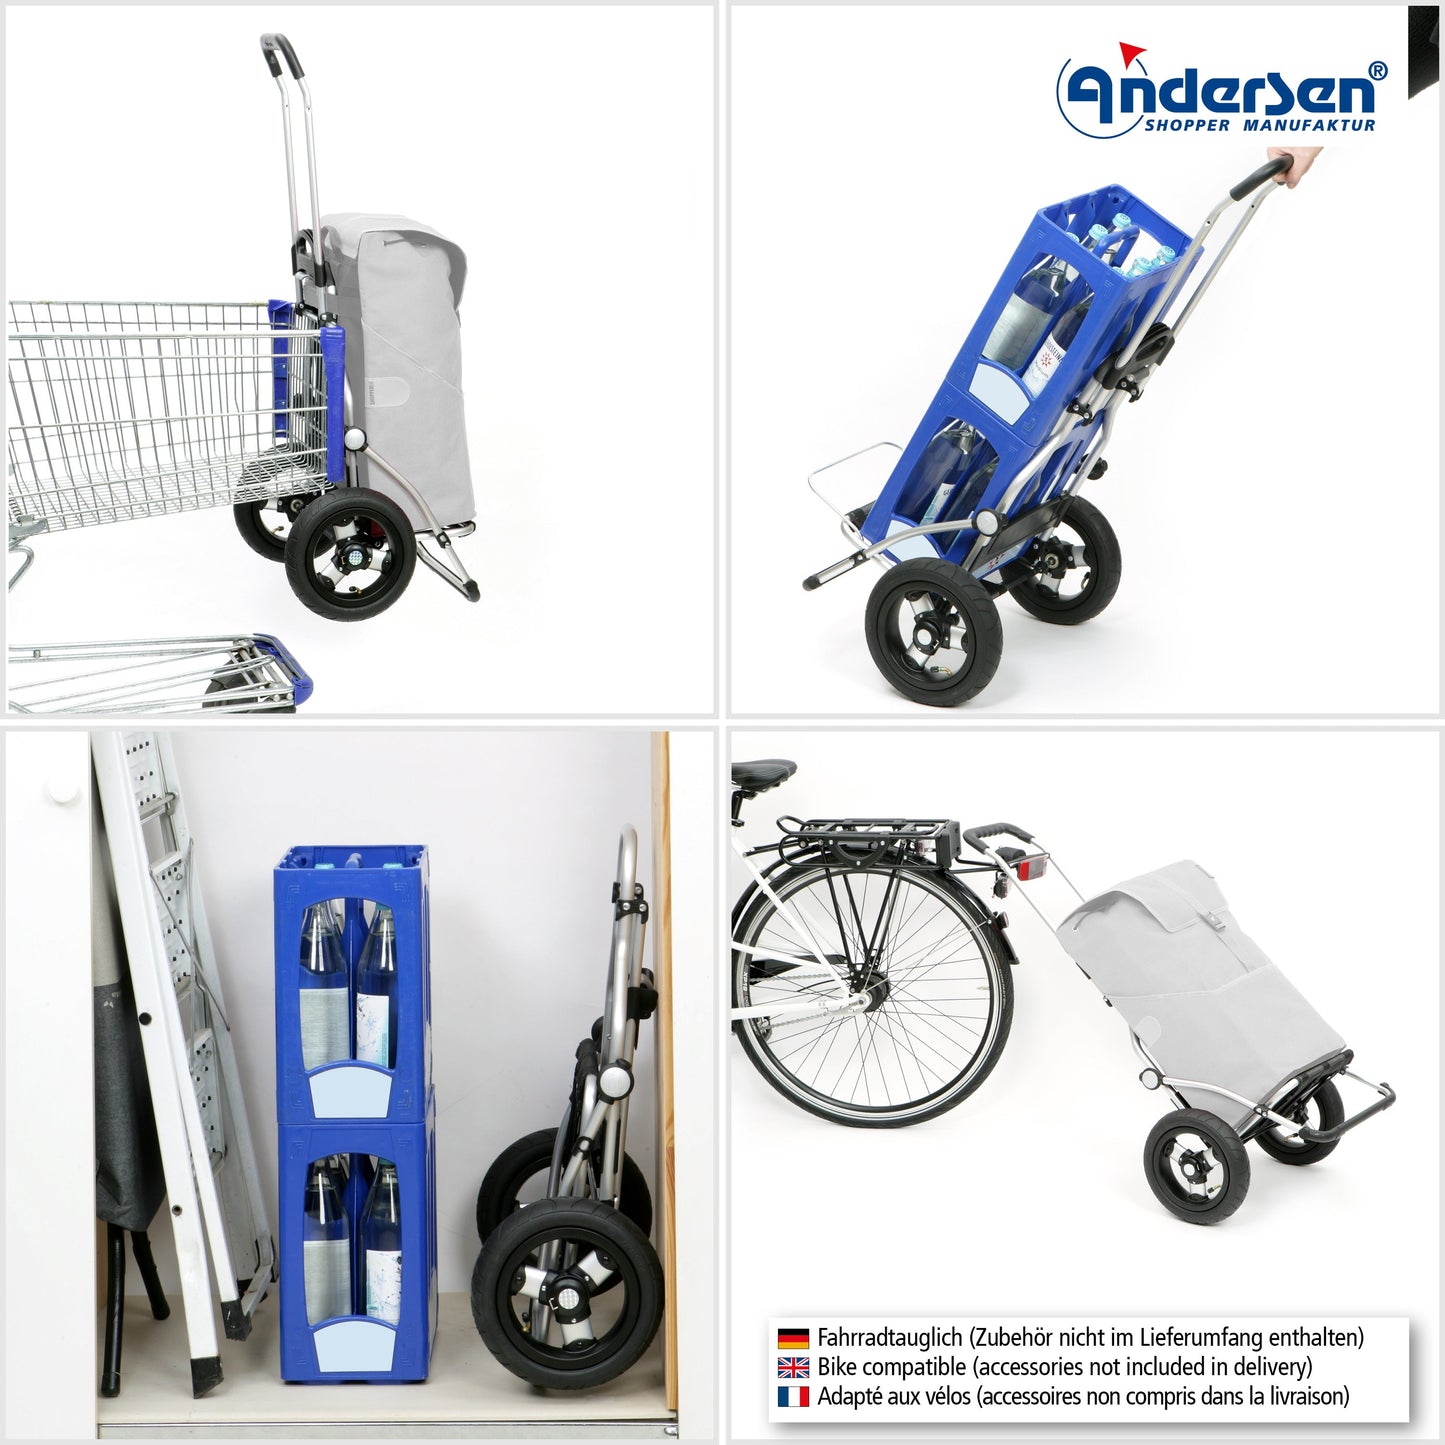 Andersen Shopper Manufaktur-Royal Shopper (Luft-Kugellagerrad 25 cm) Hydro 2.1 blau-www.shopping-trolley.ch-bild4